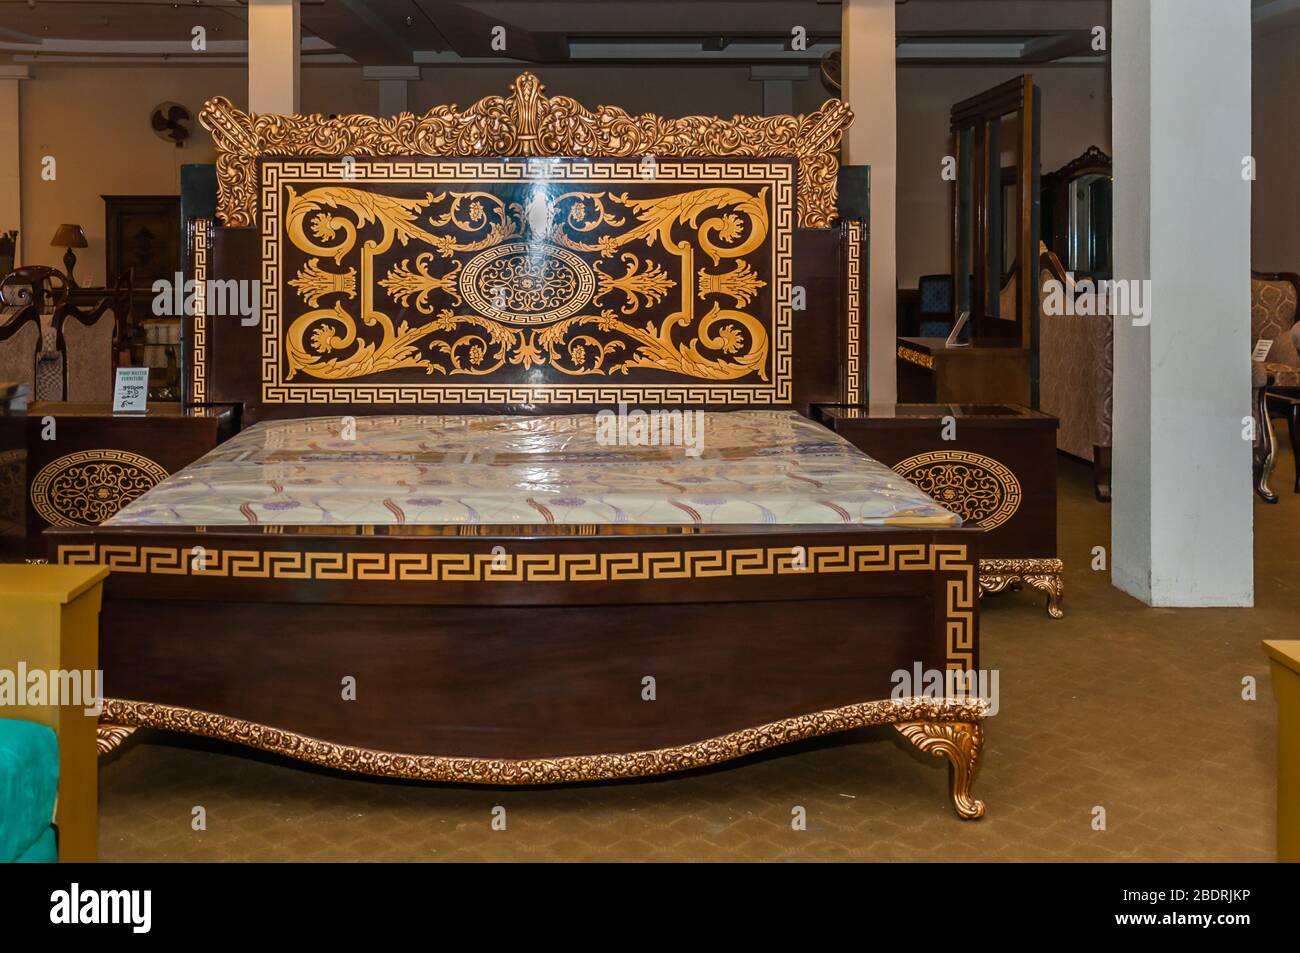 Jhelum, Punjab, Pakistan - 17. Januar 2020: Modernes Schlafzimmer mit King-Seite Doppelbett, mit Kopfteil, Beistelltische, Lampen, Jhelum, Punjab, Pakistan Stockfoto